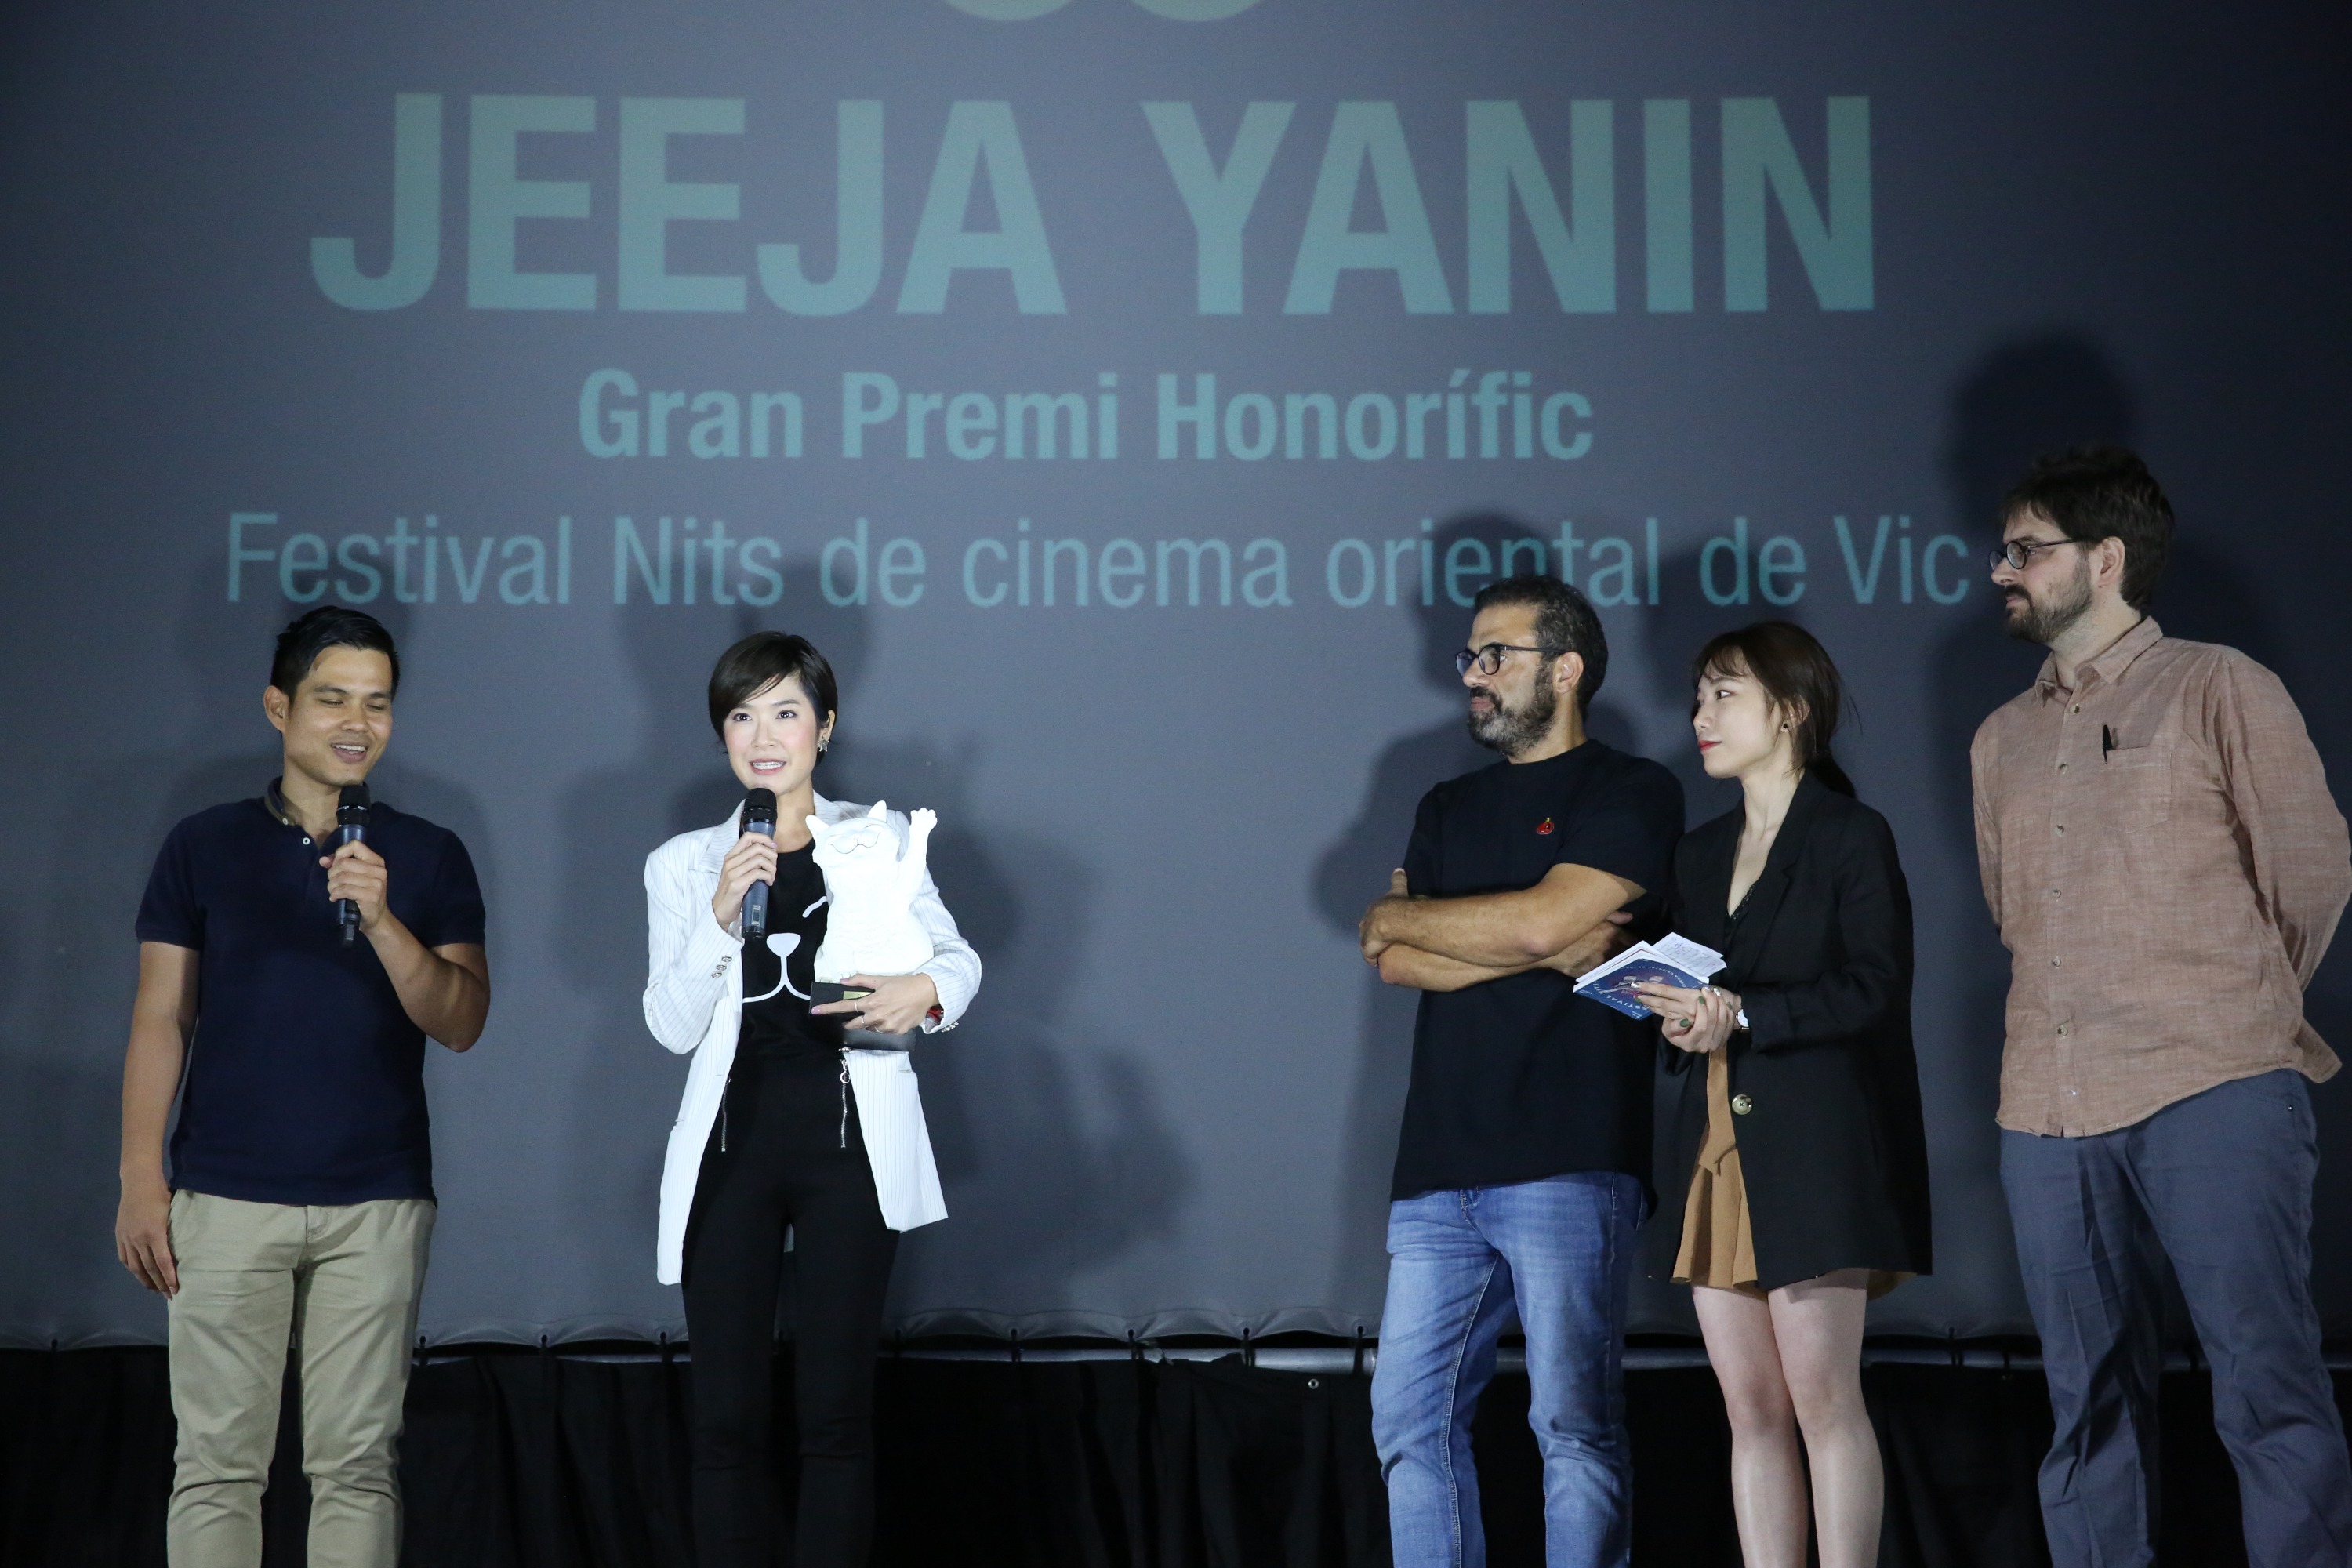 Jeeja Yanin, rebent el Premi d'Honor del festival